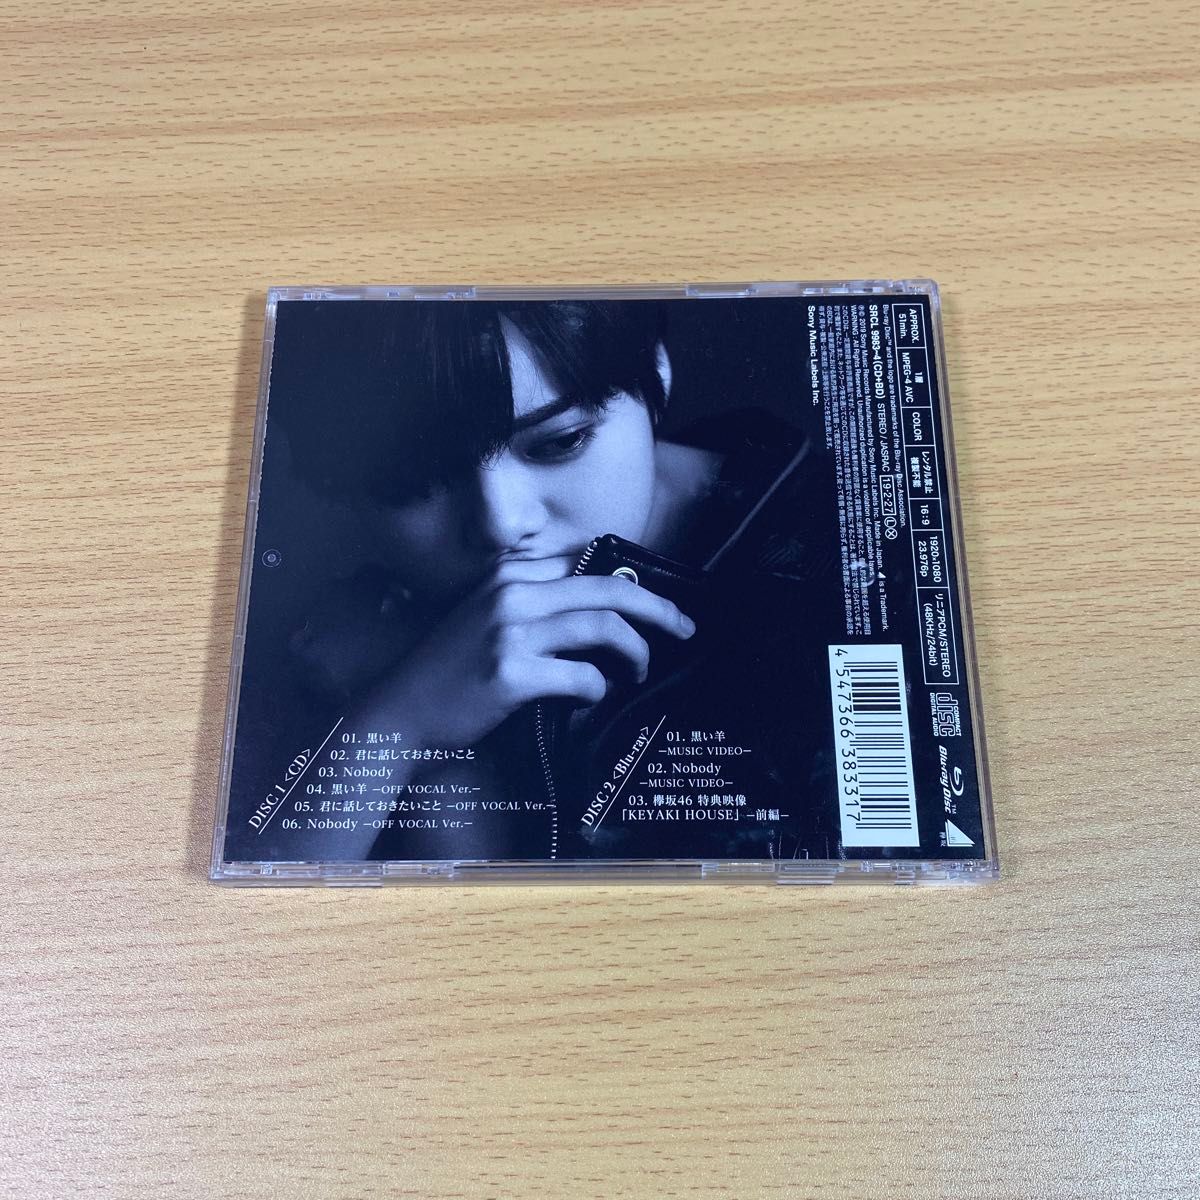 欅坂468thシングル「黒い羊」 cd+dvd 初回限定盤 TYPE-A 生写真付き